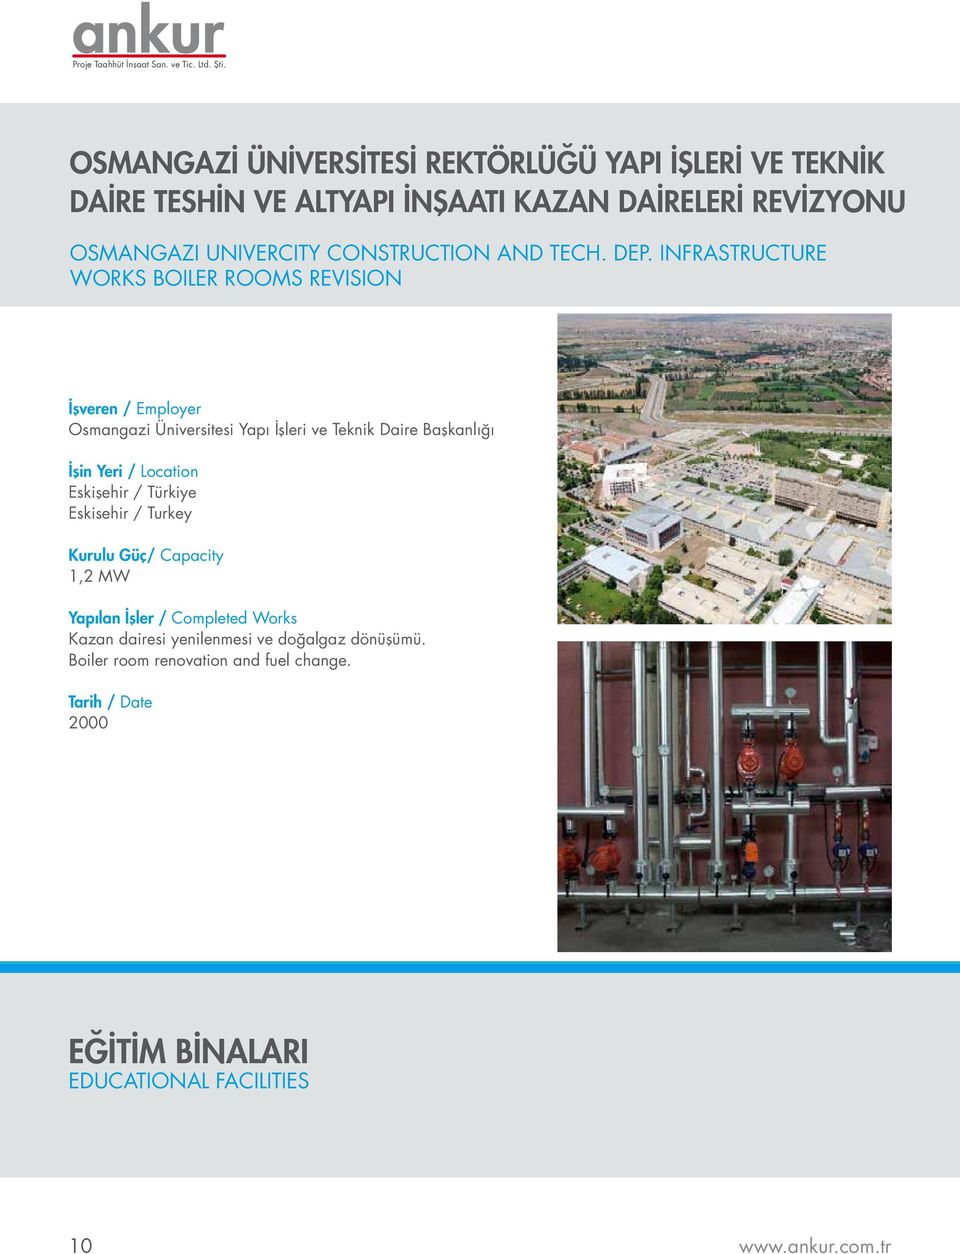 INFRASTRUCTURE WORKS BOILER ROOMS REVISION Osmangazi Üniversitesi Yapı İşleri ve Teknik Daire Başkanlığı Eskişehir /